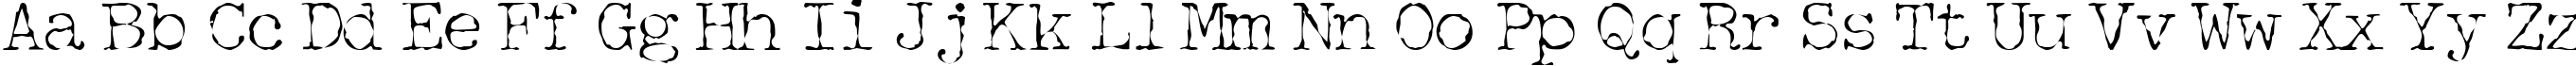 Пример написания английского алфавита шрифтом Detective